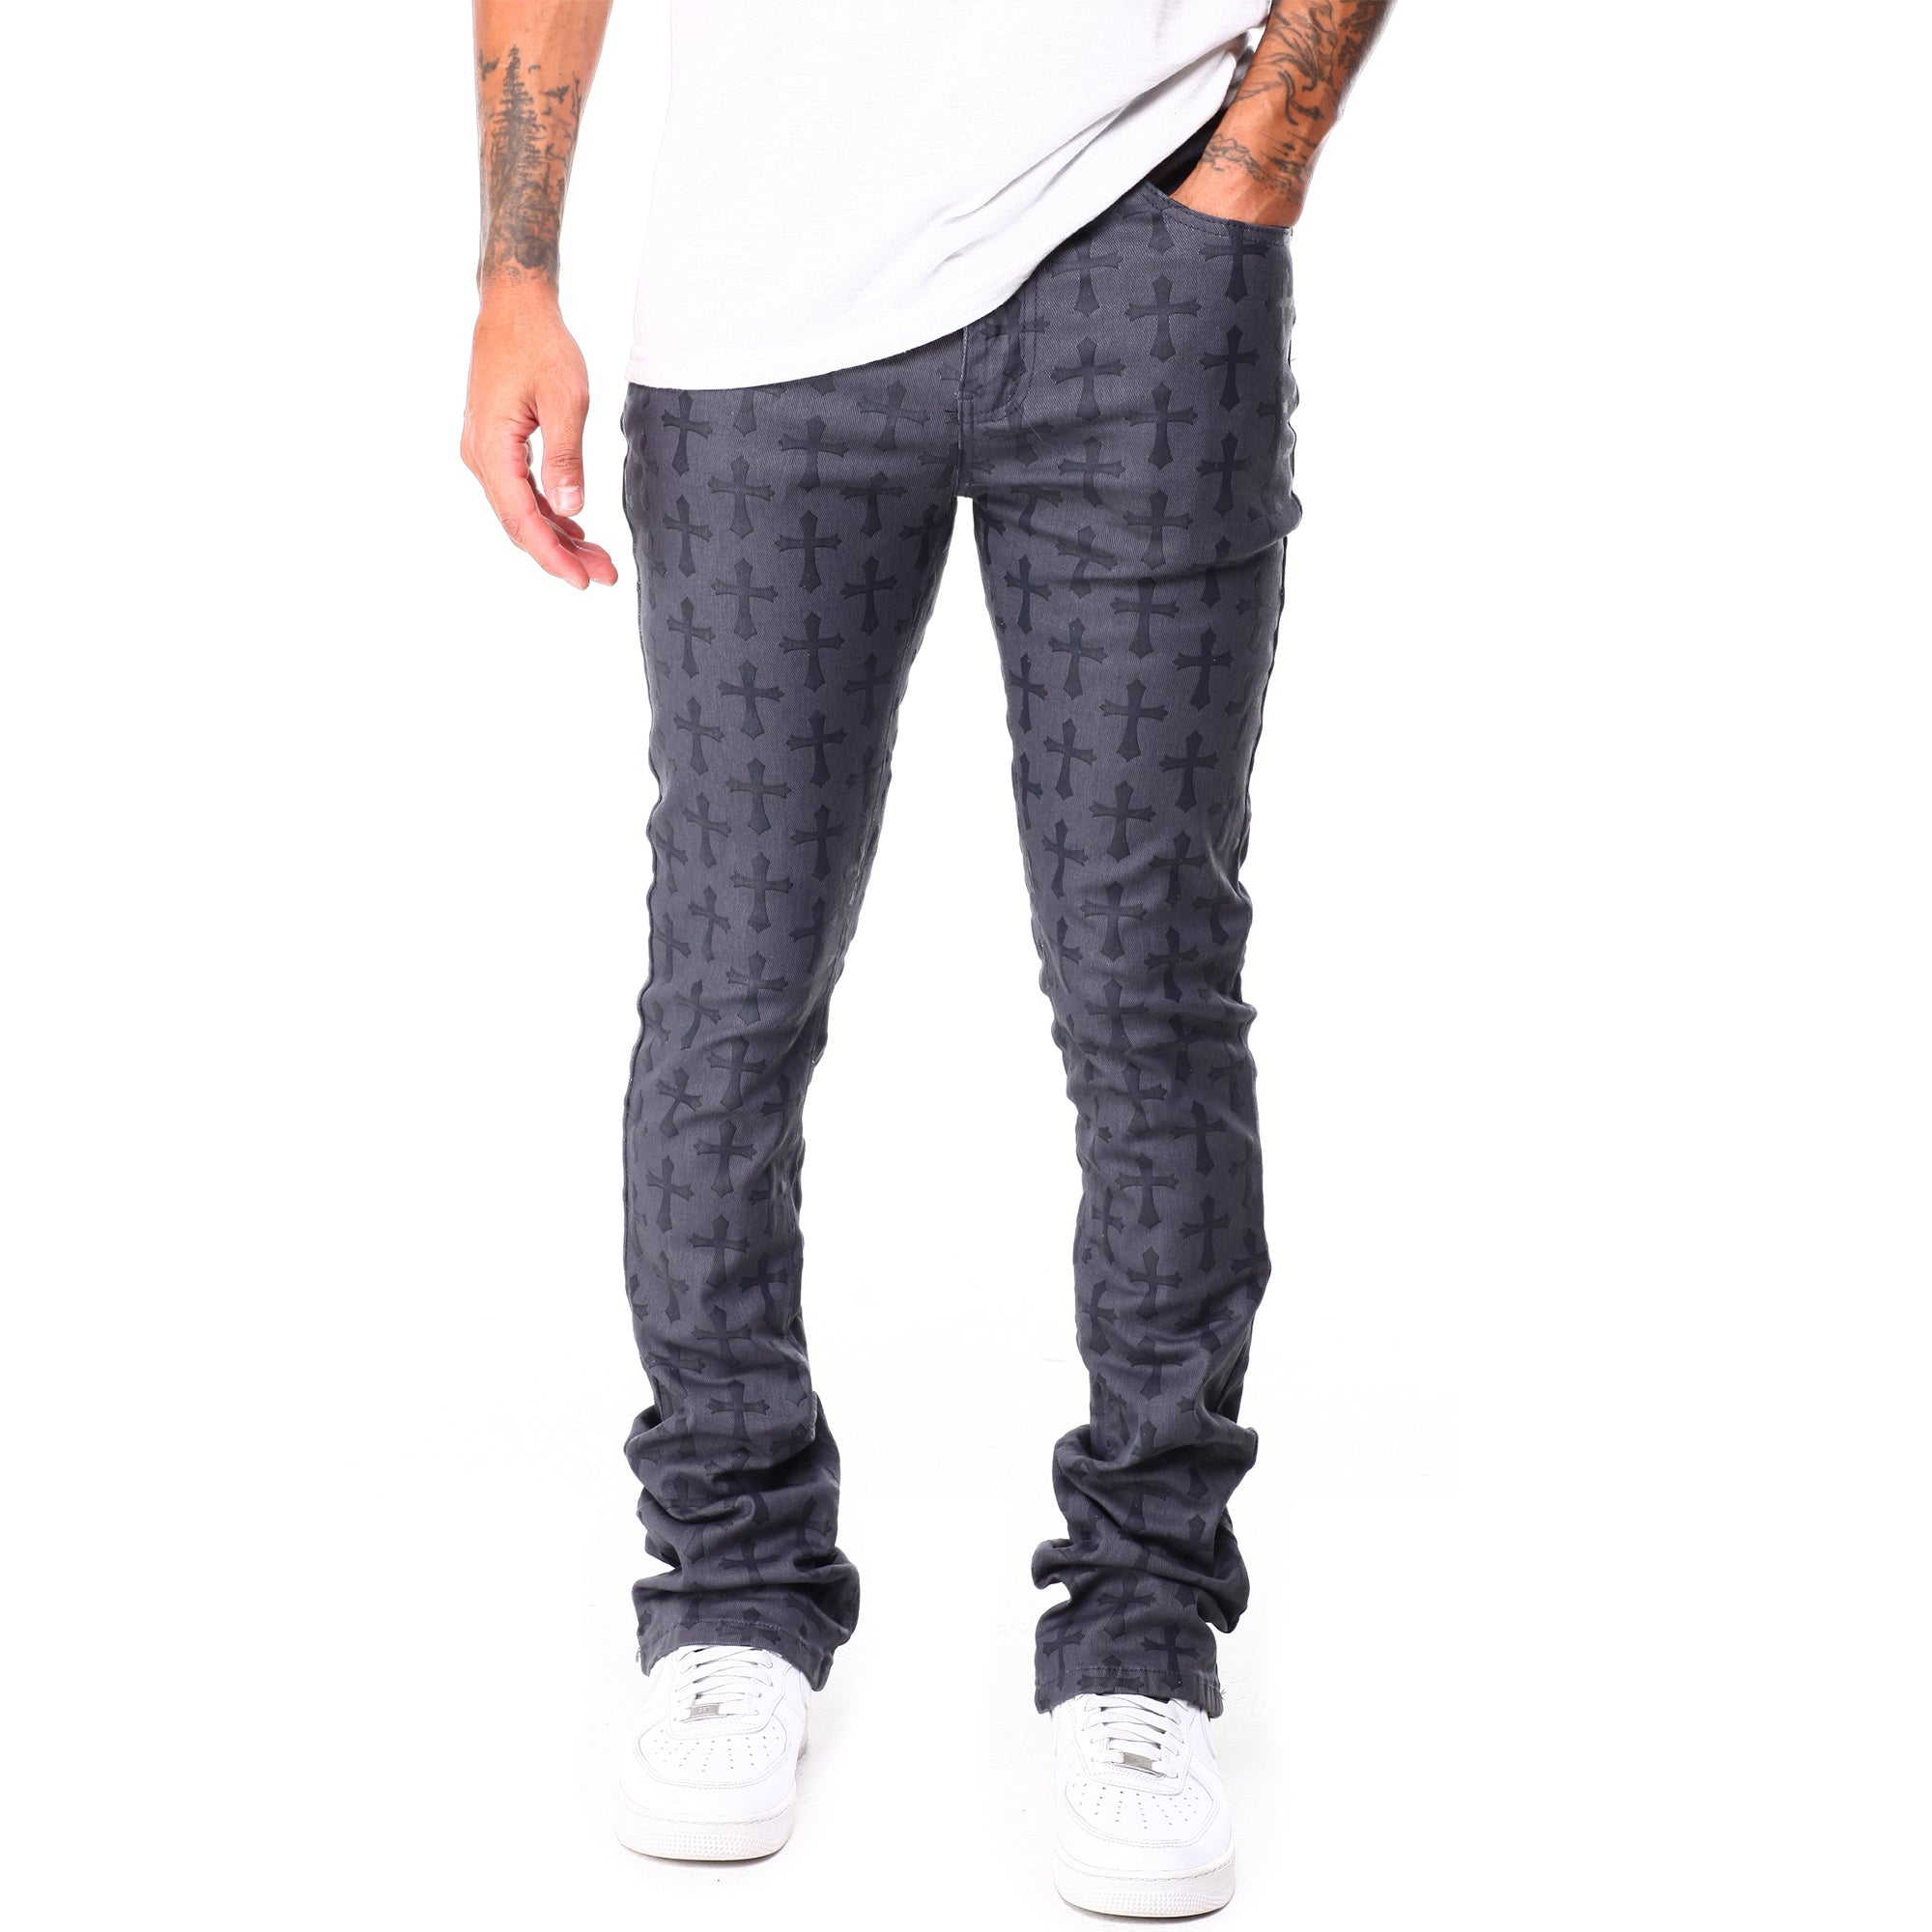 WaiMea Men Skinny Jeans (Grey)-Grey-32W x 36L-Nexus Clothing